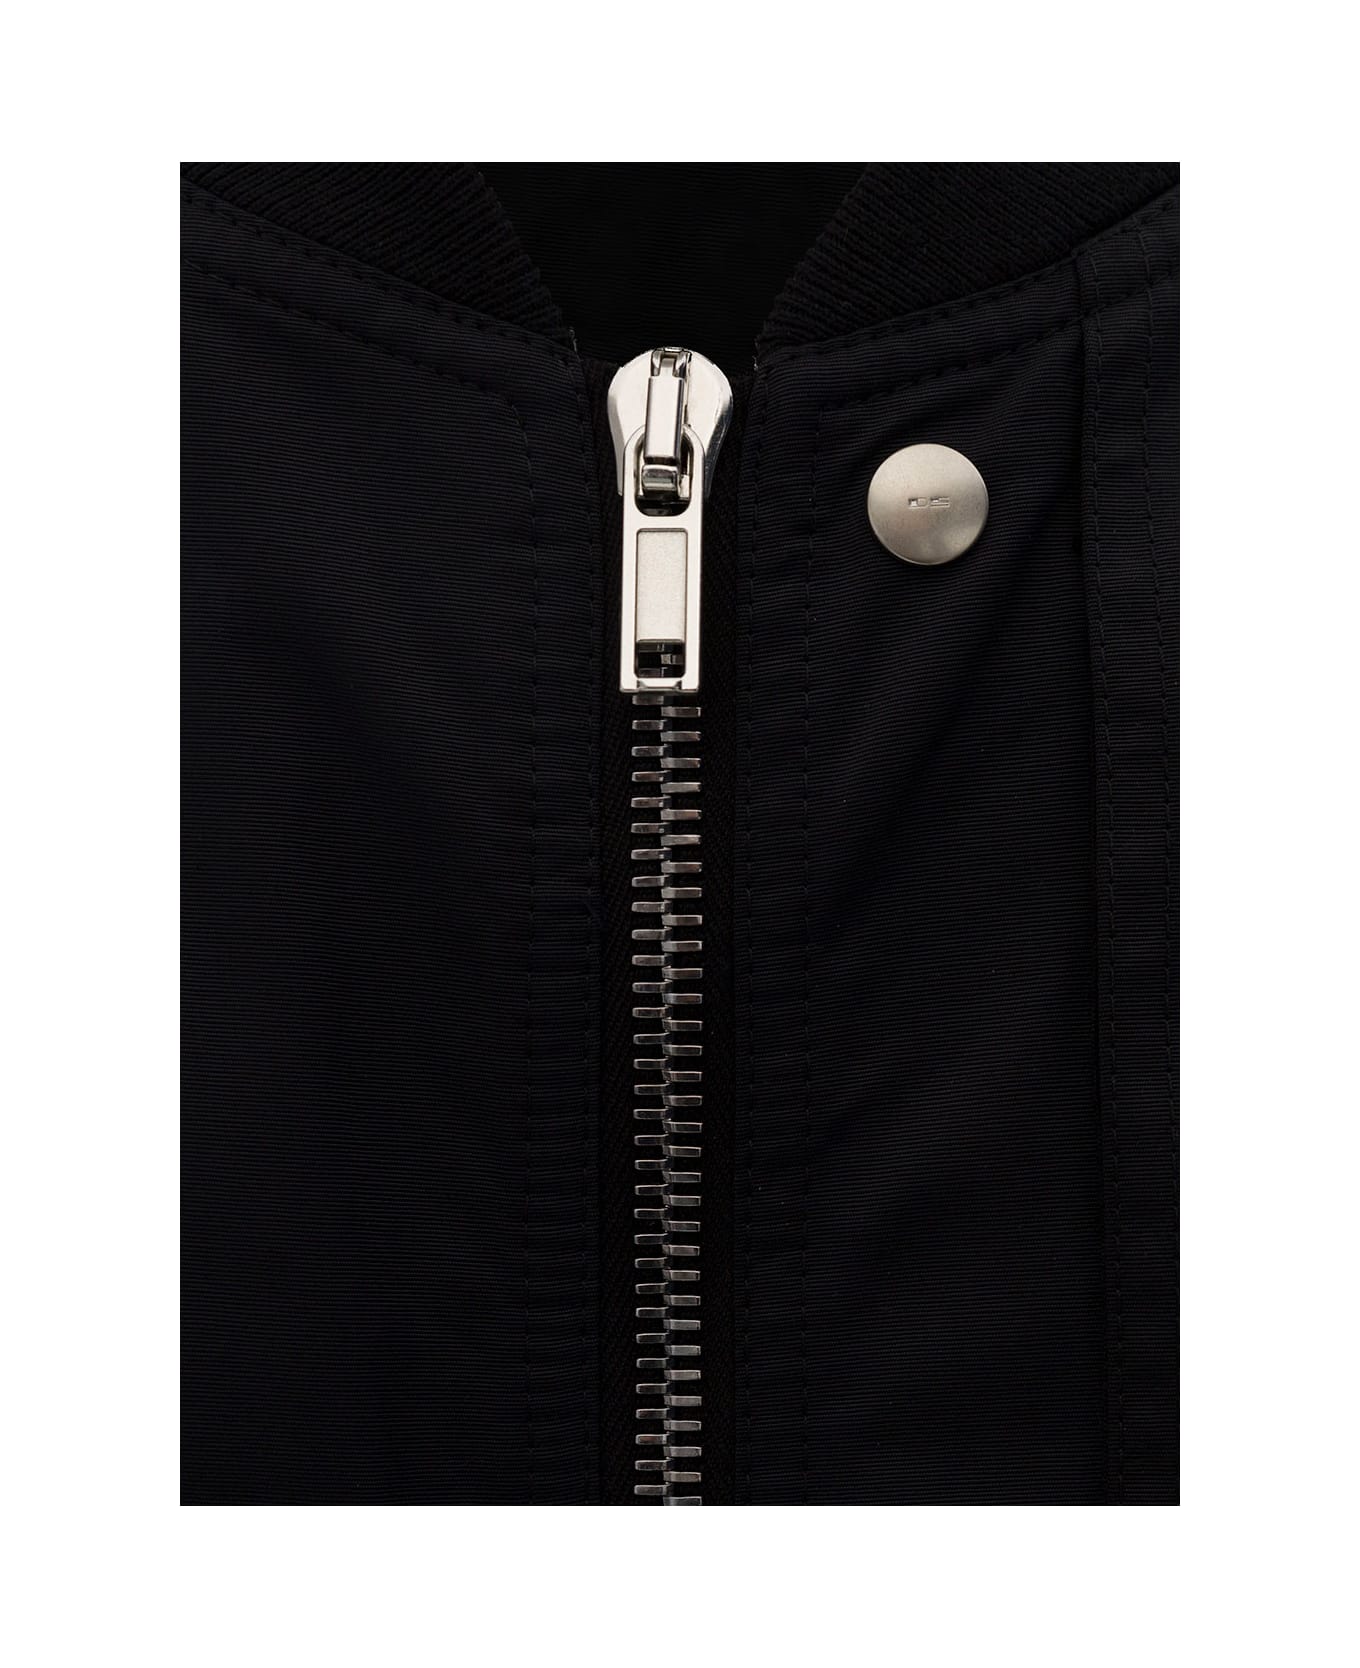 DRKSHDW Black Bomber Jacket With Flap Pockets In Cotton Blend Man - Black